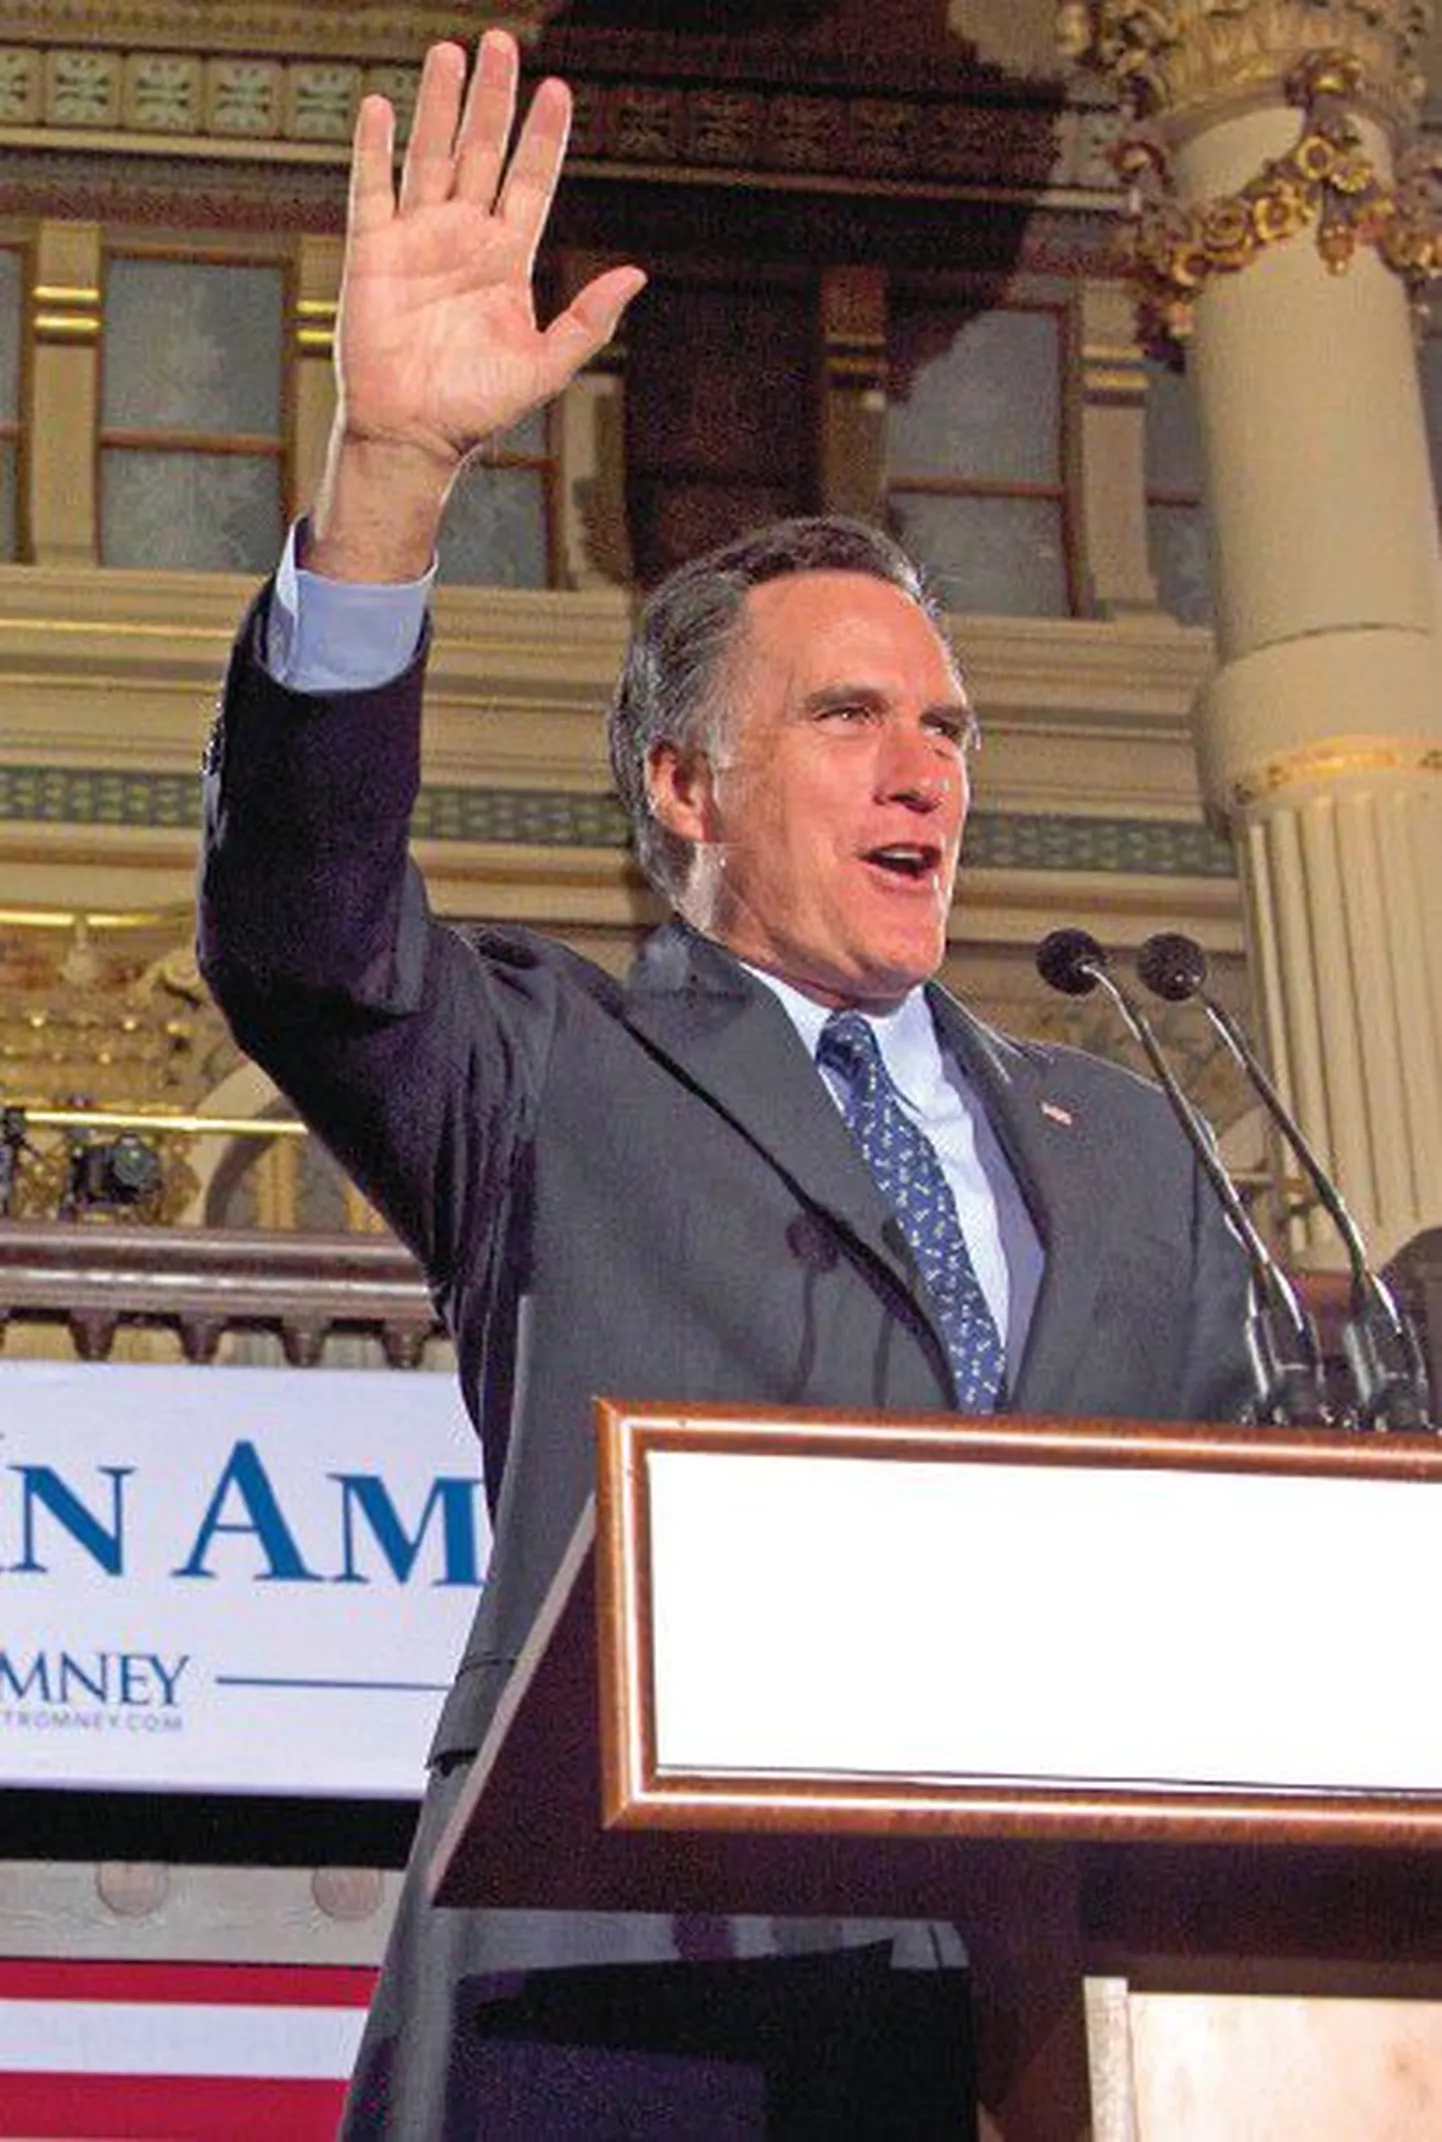 В своей победной речи Митт Ромни не стал даже упоминать товарищей по партии, сосредоточившись на выпадах в сторону Обамы и его политики.